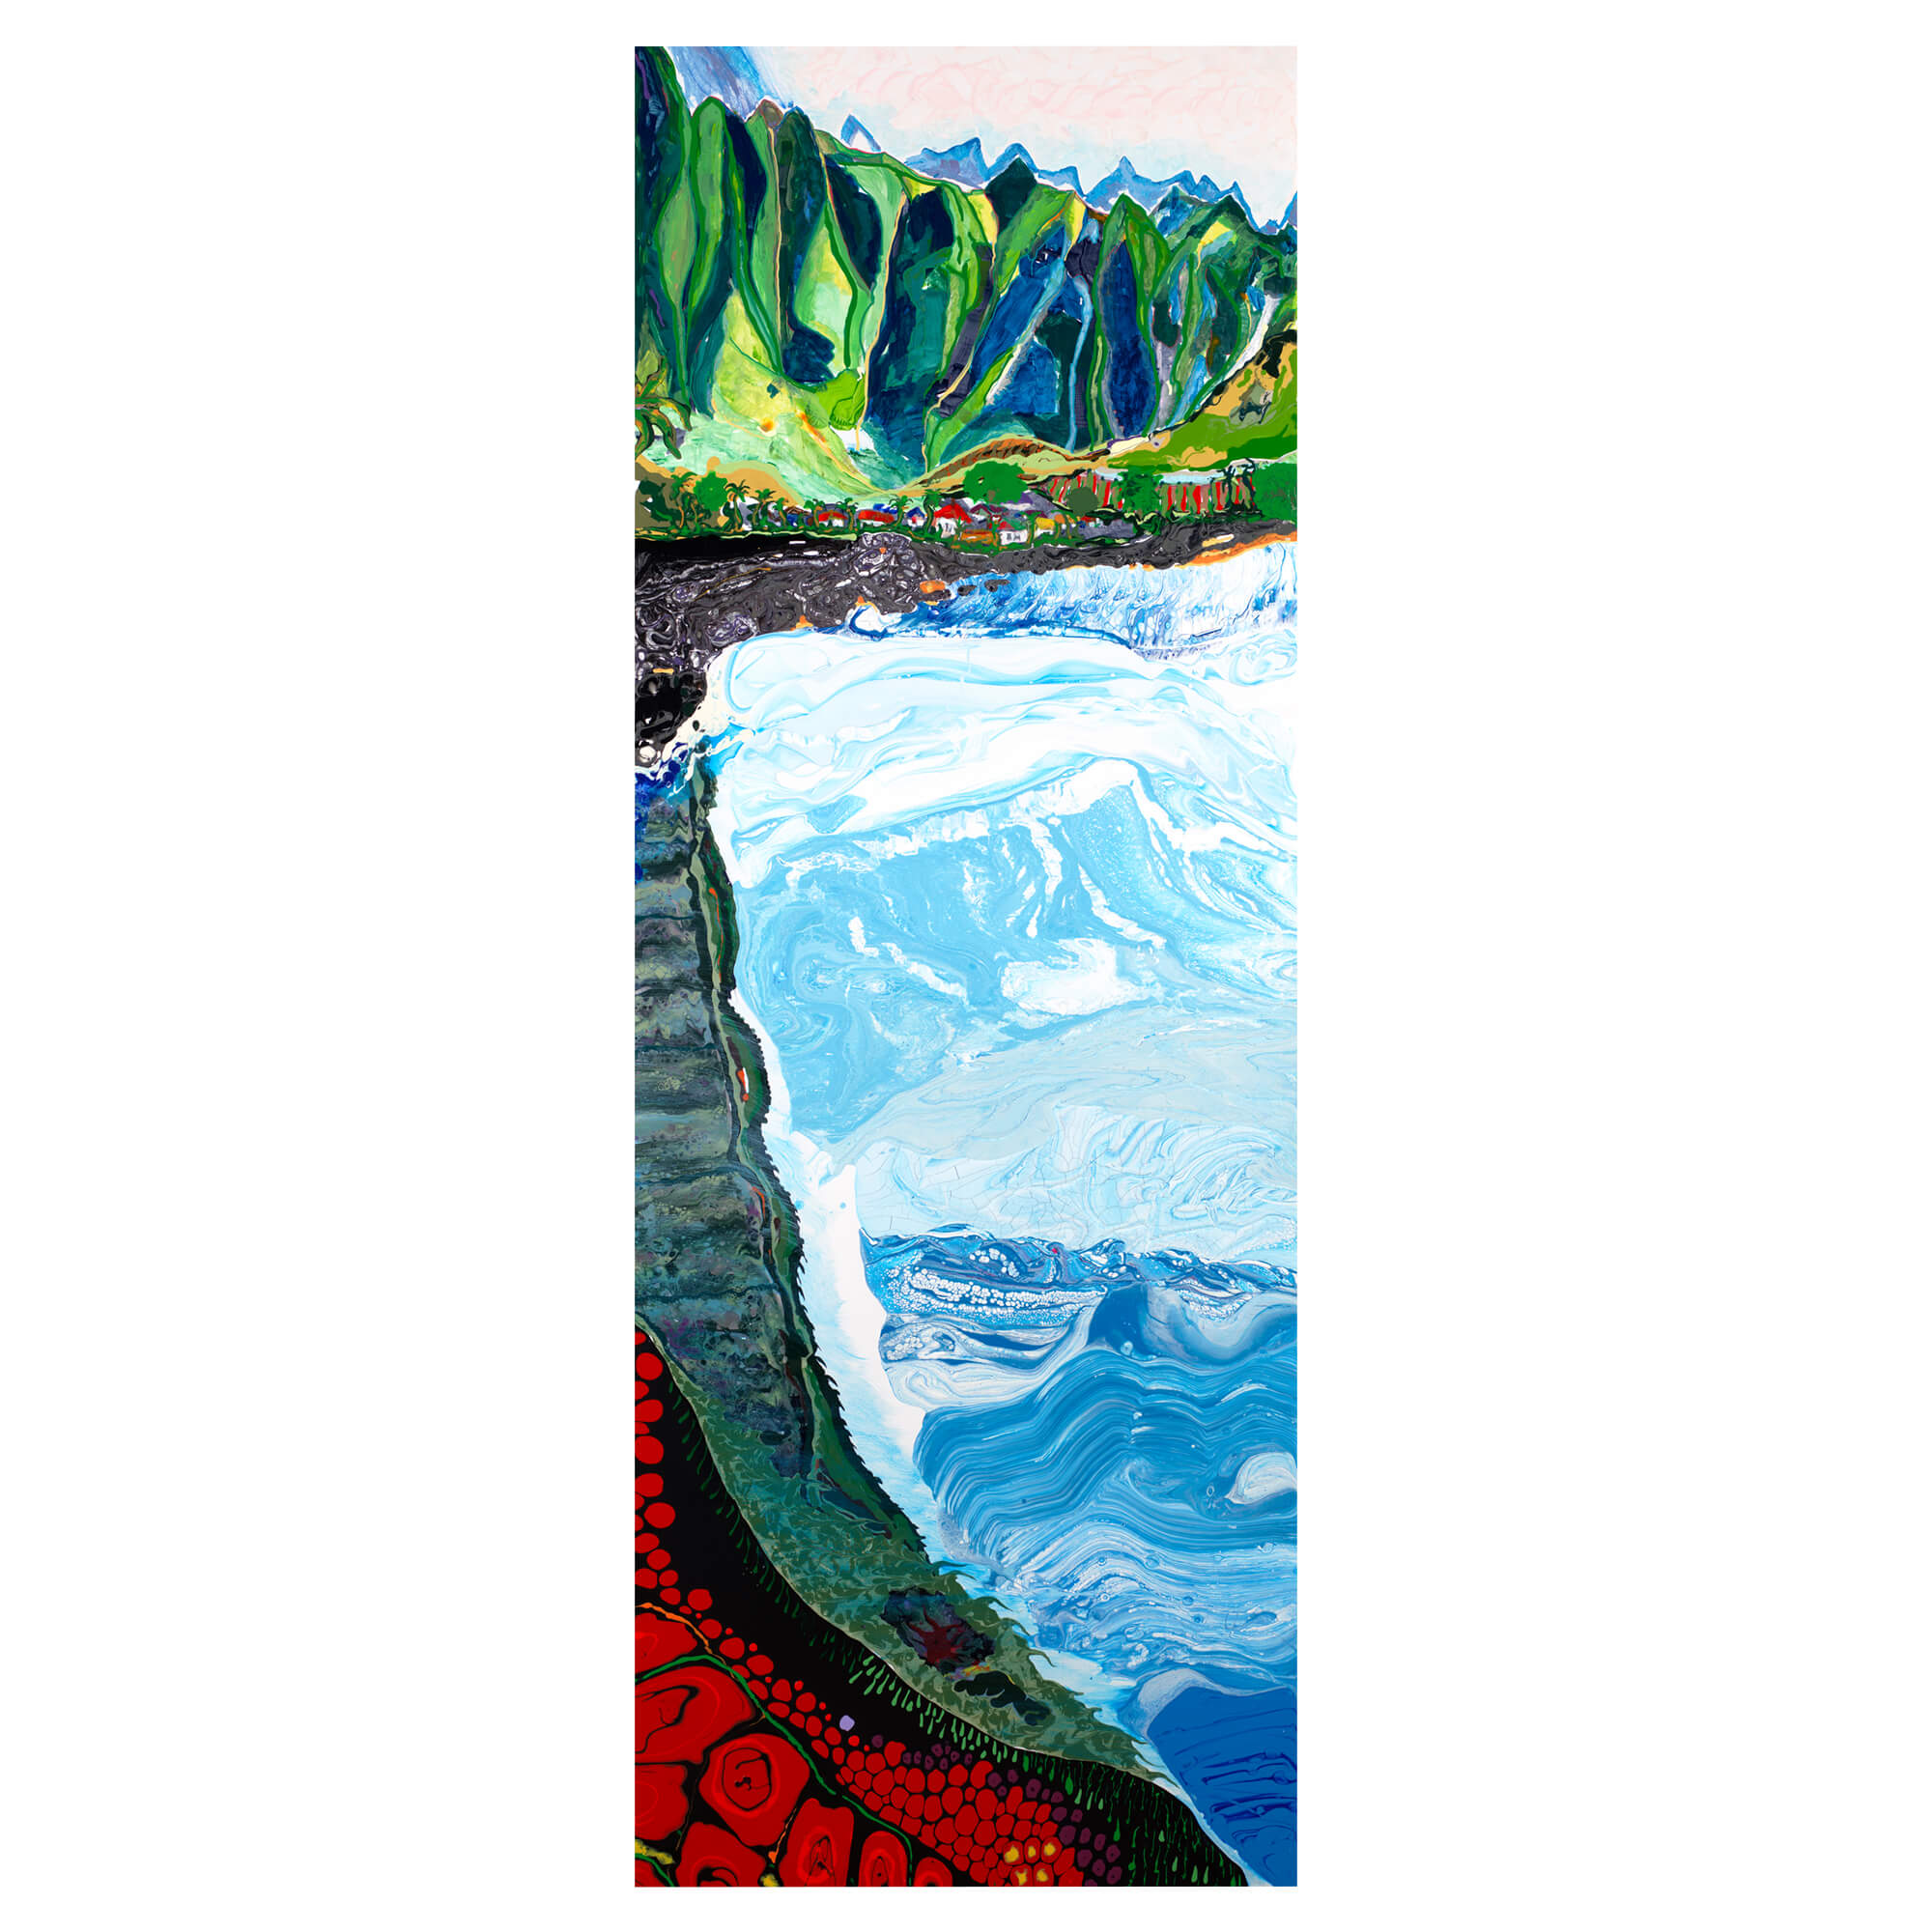 art print featuring an abstract landscapeby Hawaii artist Robert Hazzard